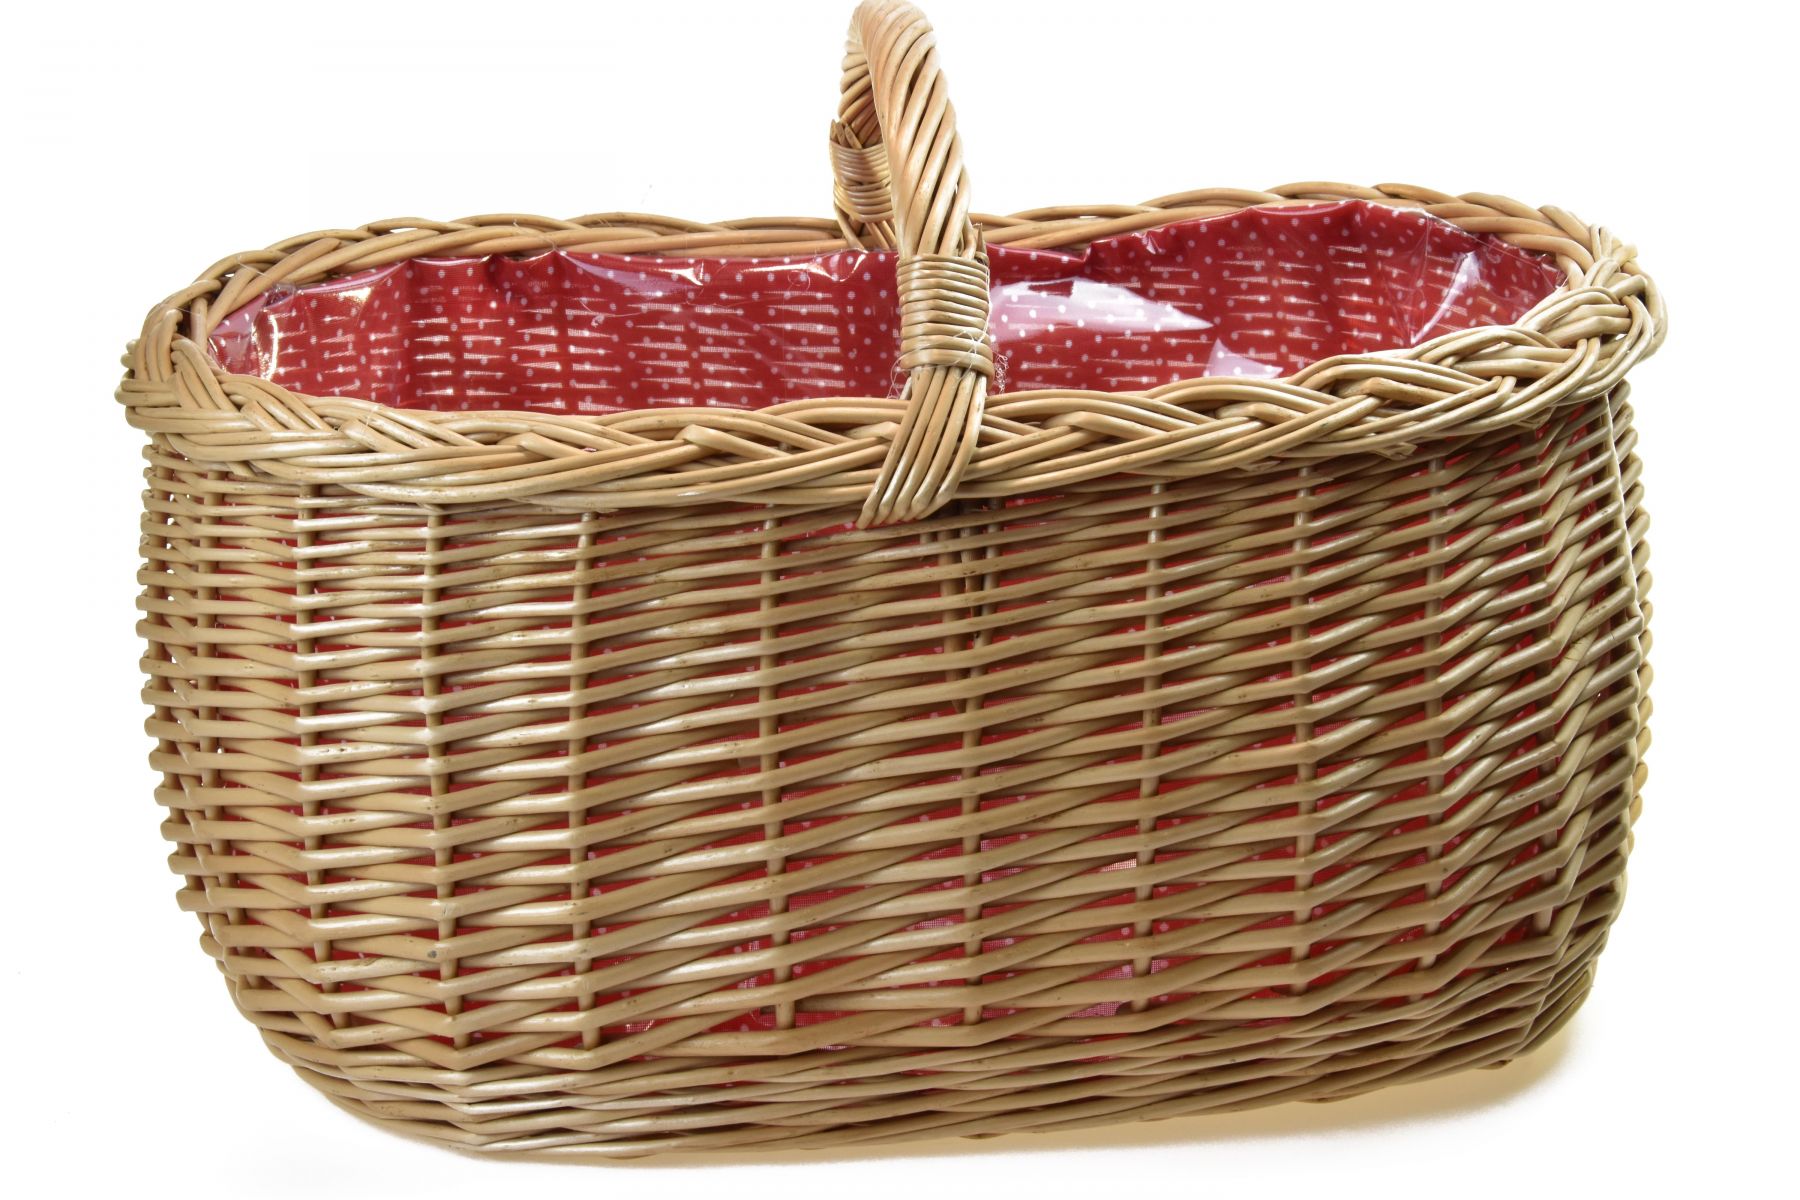 Vingo Proutěný nákupní košík s igelitovou vložkou a červenou látkou - Vingo